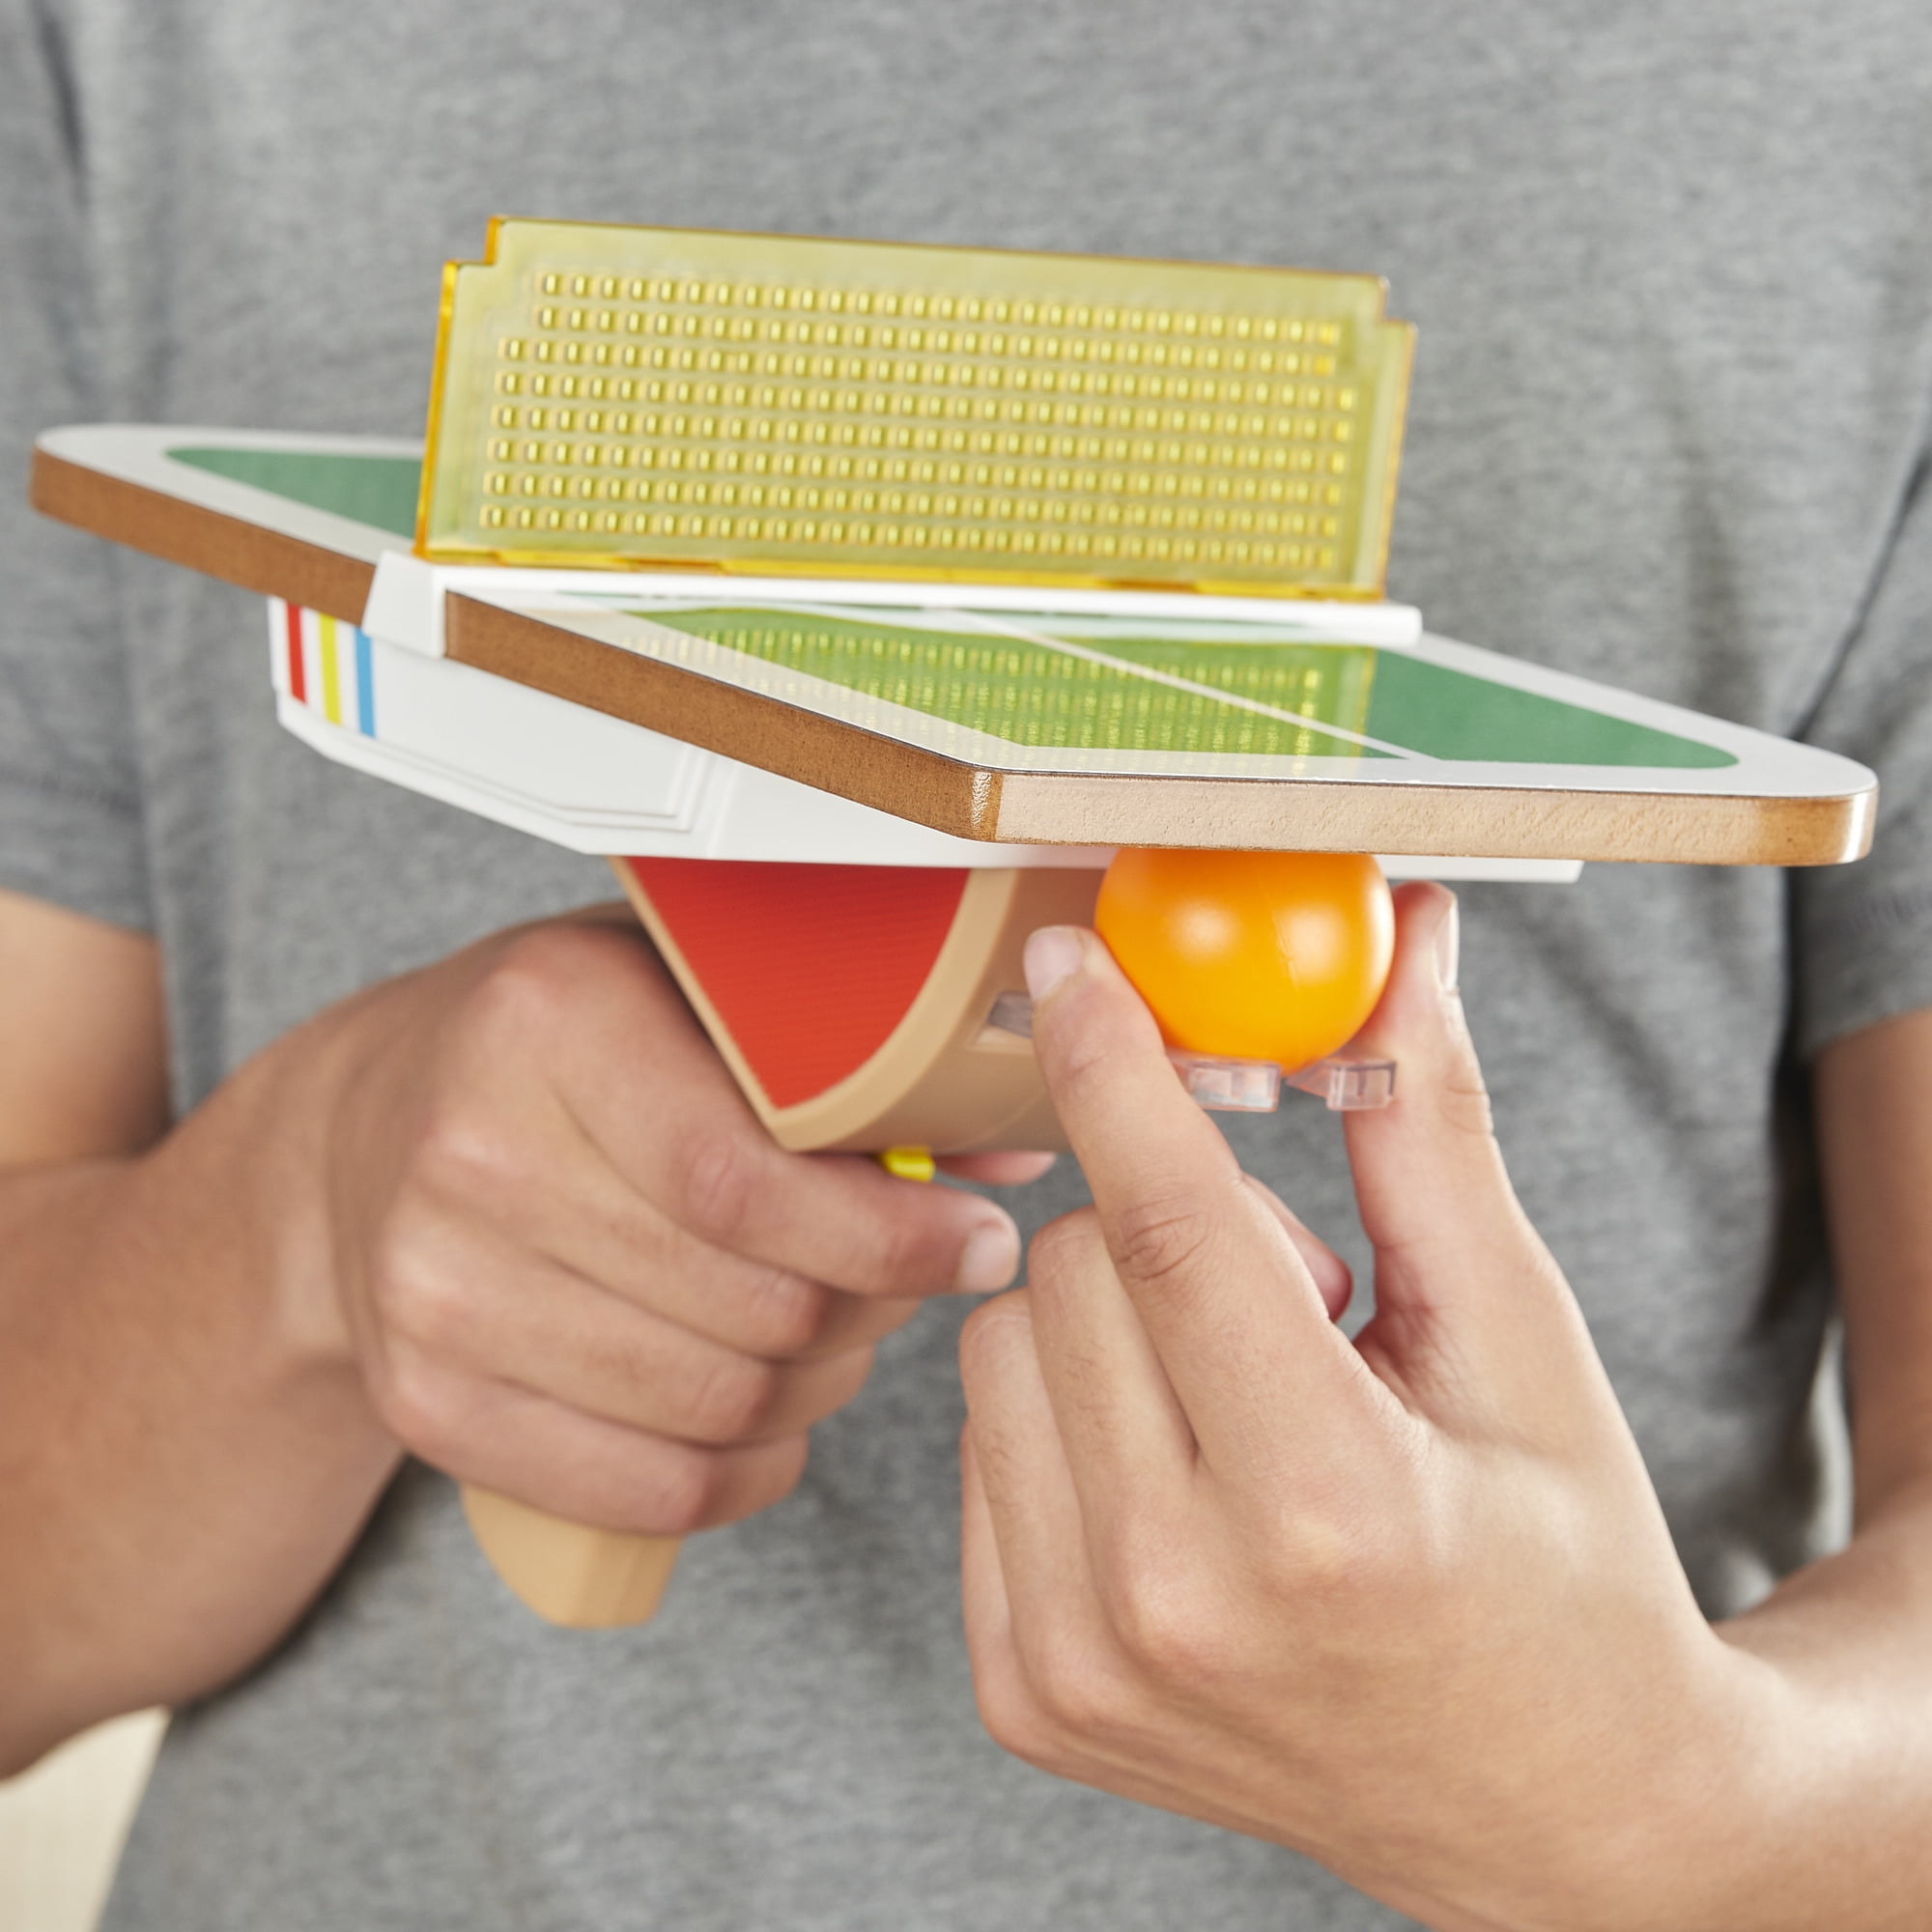 pong handheld game